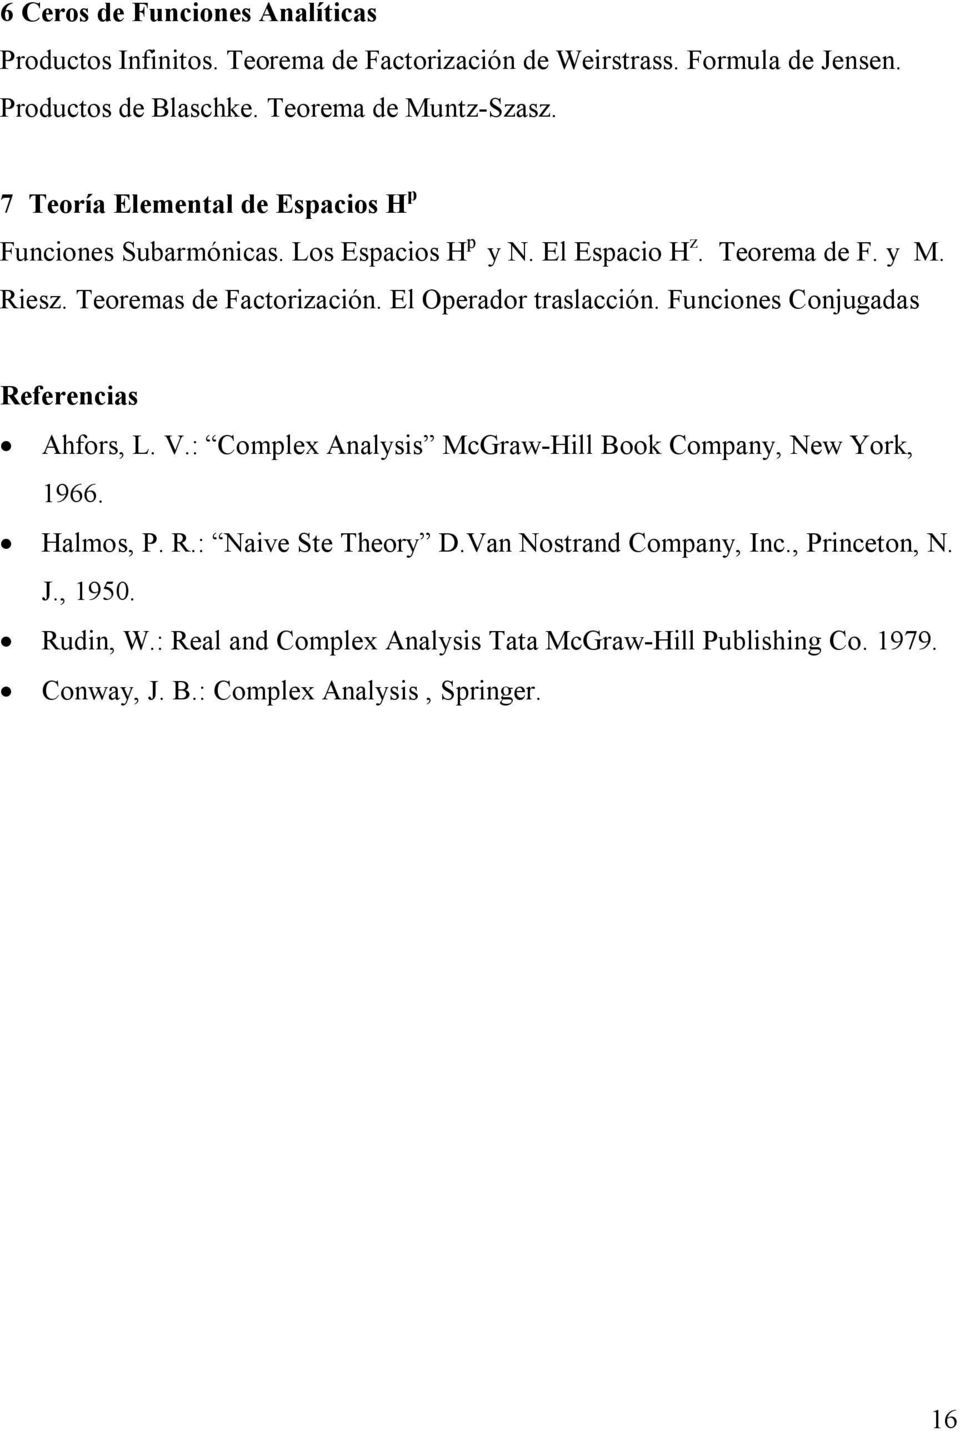 El Operador traslacción. Funciones Conjugadas Referencias Ahfors, L. V.: Complex Analysis McGraw-Hill Book Company, New York, 1966. Halmos, P. R.: Naive Ste Theory D.